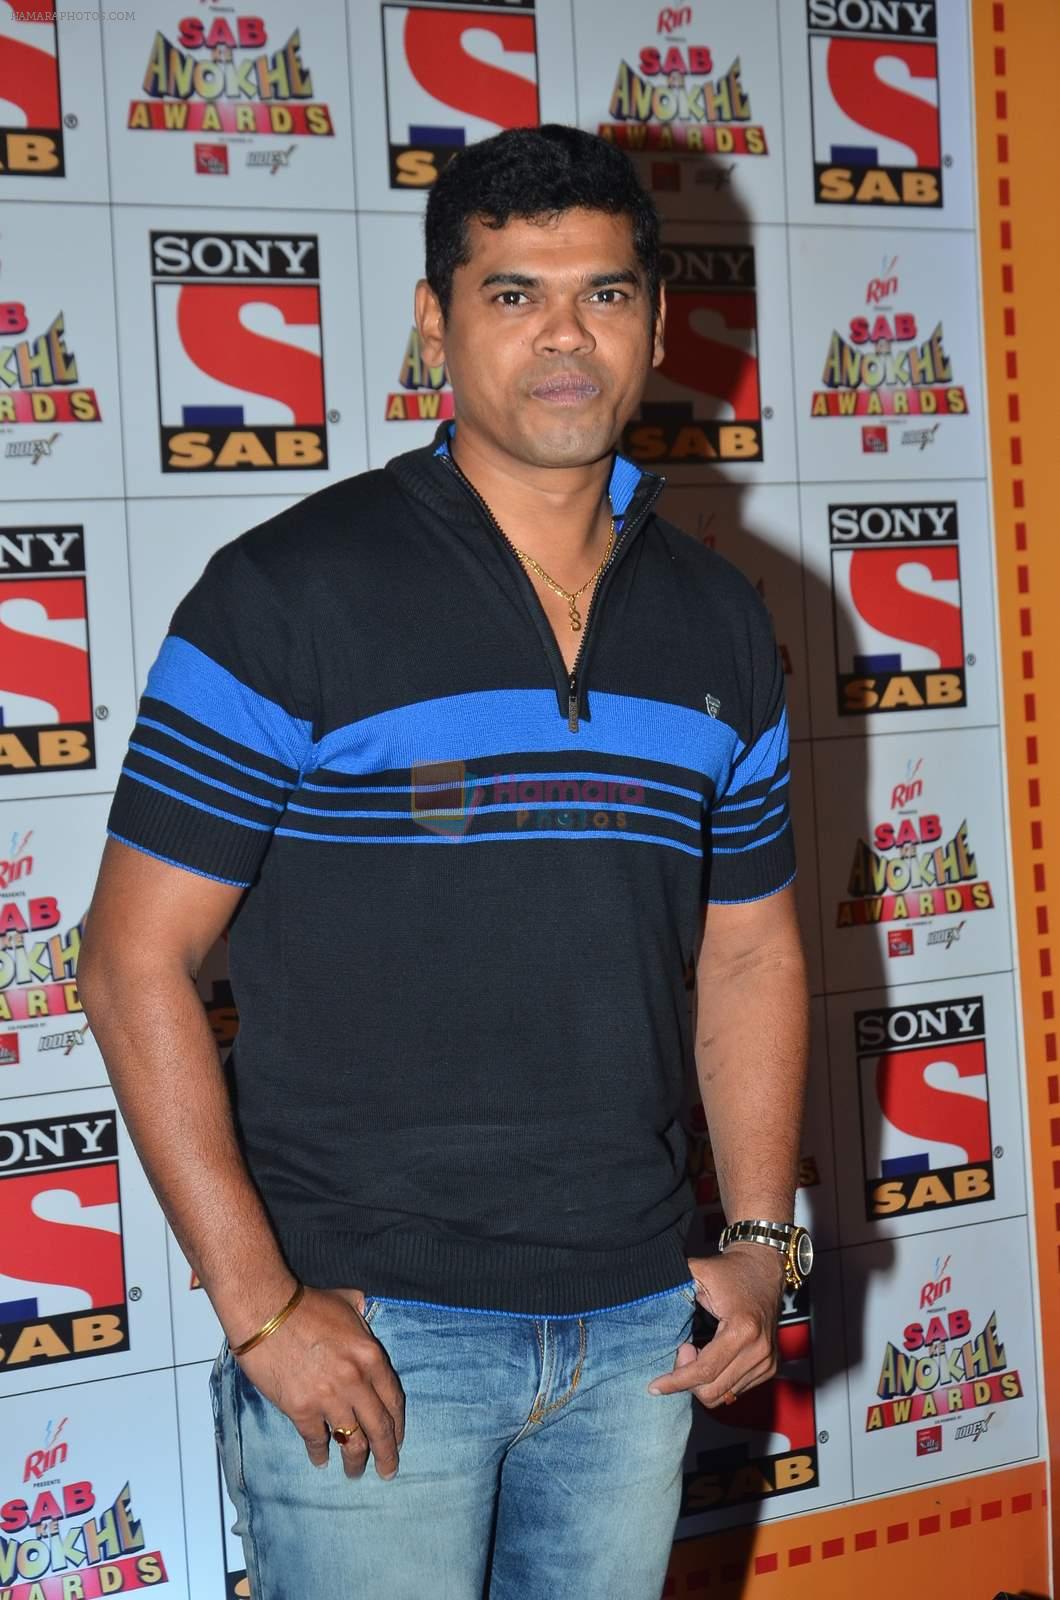 Siddarth Jadhav at SAB Ke Anokhe Awards in Filmcity on 9th july 2015